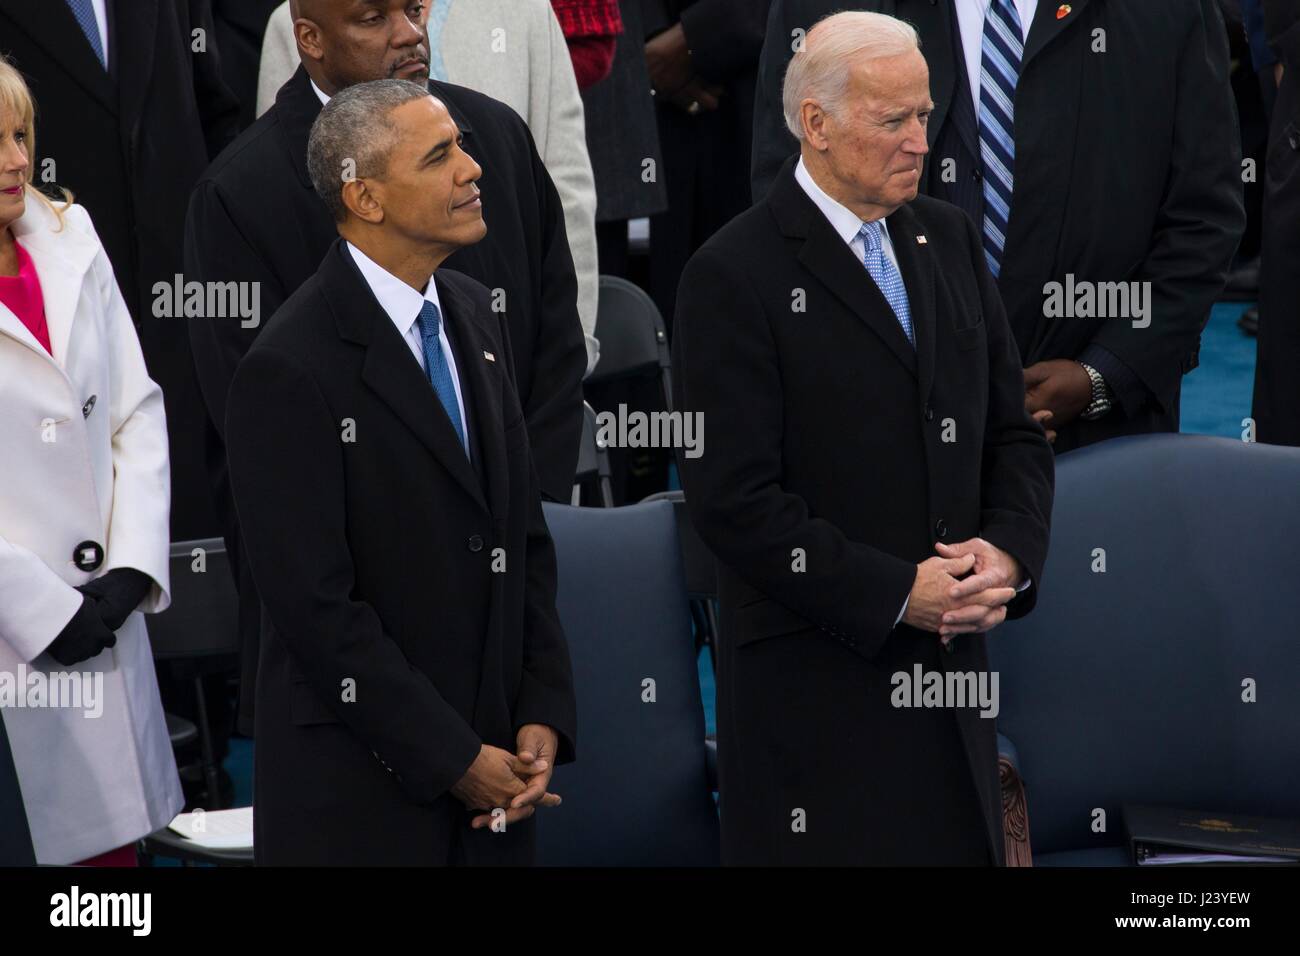 Ehemaliger US-Präsident Barack Obama und ehemaliger Vize-Präsident Joe Biden besuchen die 58. Presidential Inauguration von Donald Trump auf dem US-Kapitol 20. Januar 2017 in Washington, DC.    (Foto von Cristian L. Ricardo /DoD über Planetpix) Stockfoto